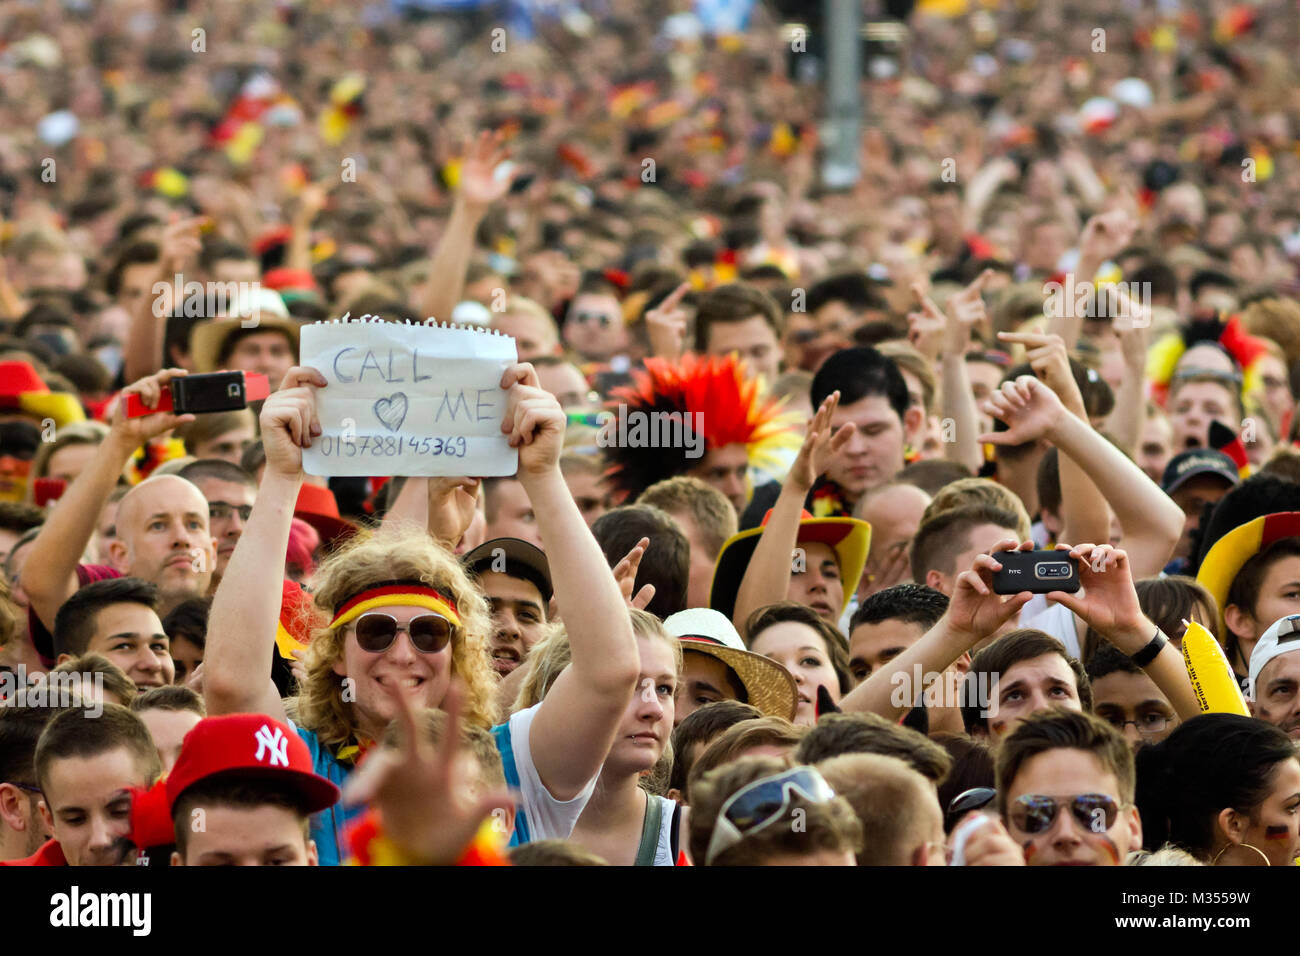 Menschenmassen verfolgen auf der riesigen Leinwand und freuen sich auf derFanmeile zur Europameisterschaft 2012 Deutschland gegen Griechenland am Brandenburger Tor in Berlin Stock Photo